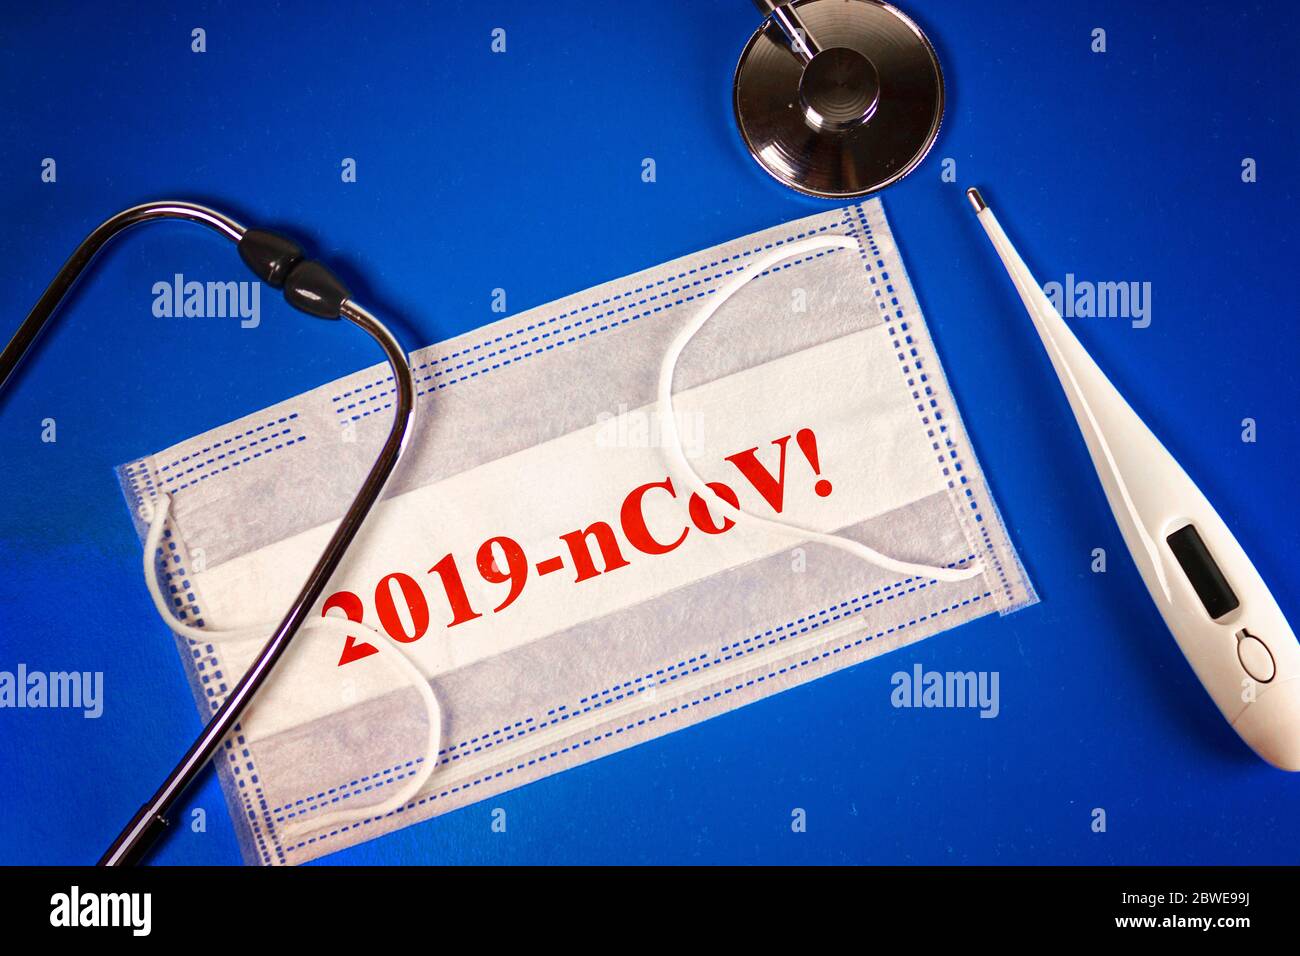 Stetoscopio, termometro e termometro maschera medica con 2019 nCoV su sfondo blu. Novel coronavirus - 2019-nCoV, CONCETTO di virus WUHAN. Foto Stock